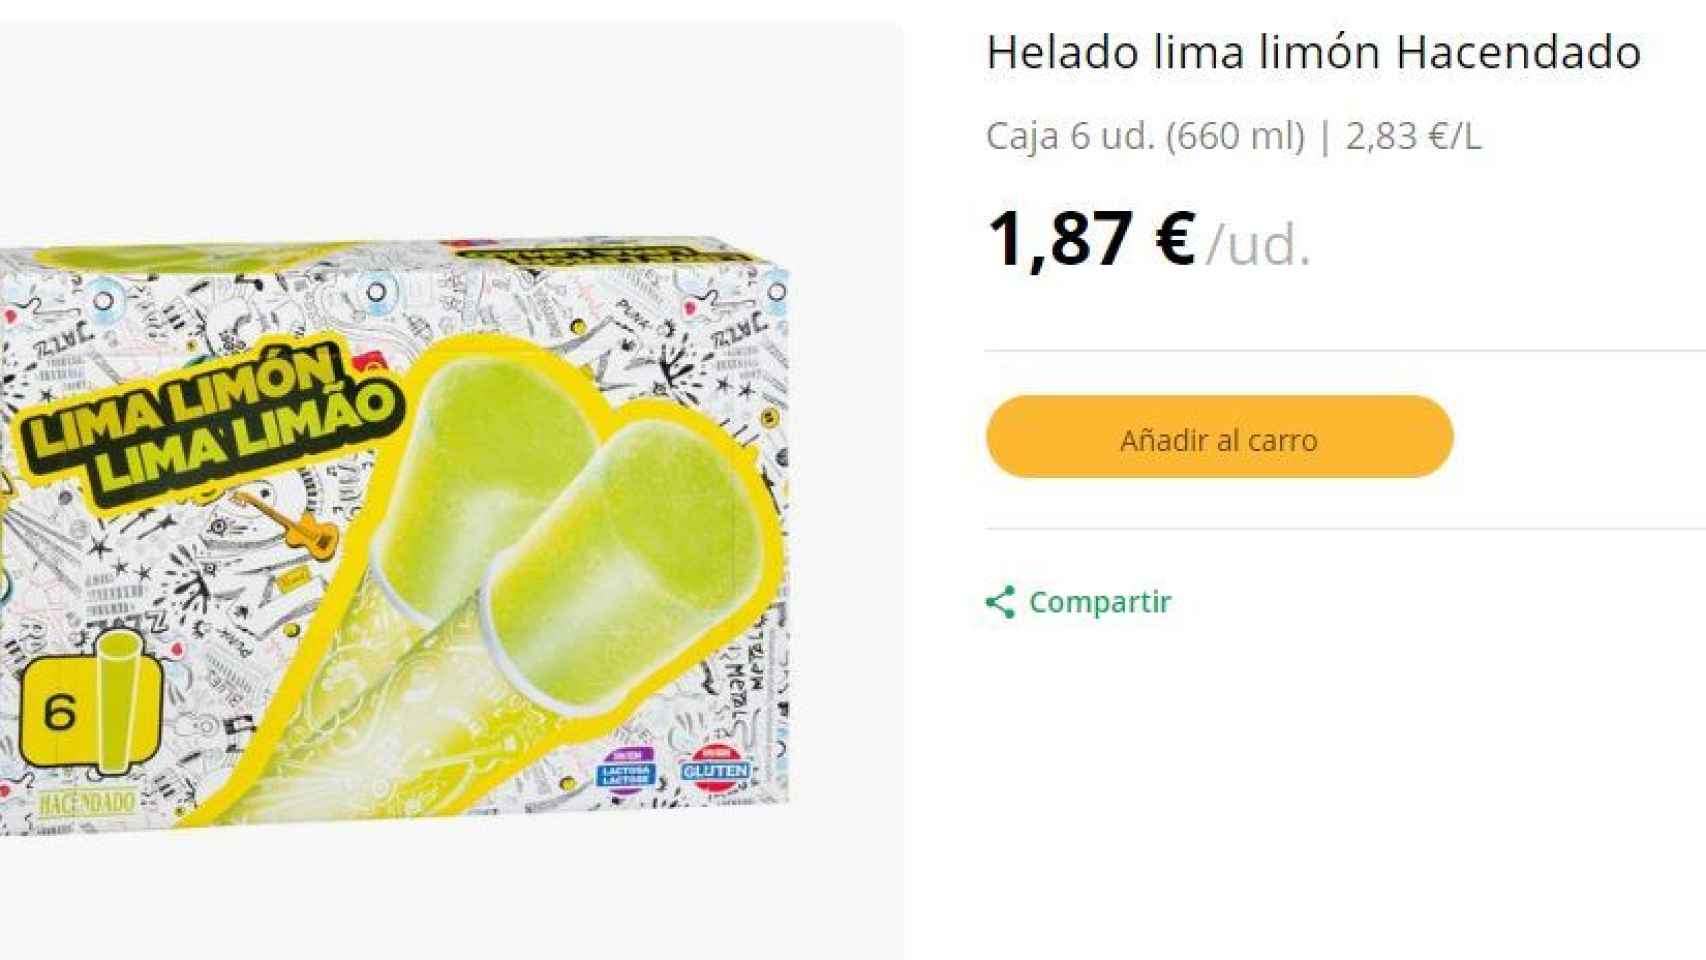 Helado de lima limón